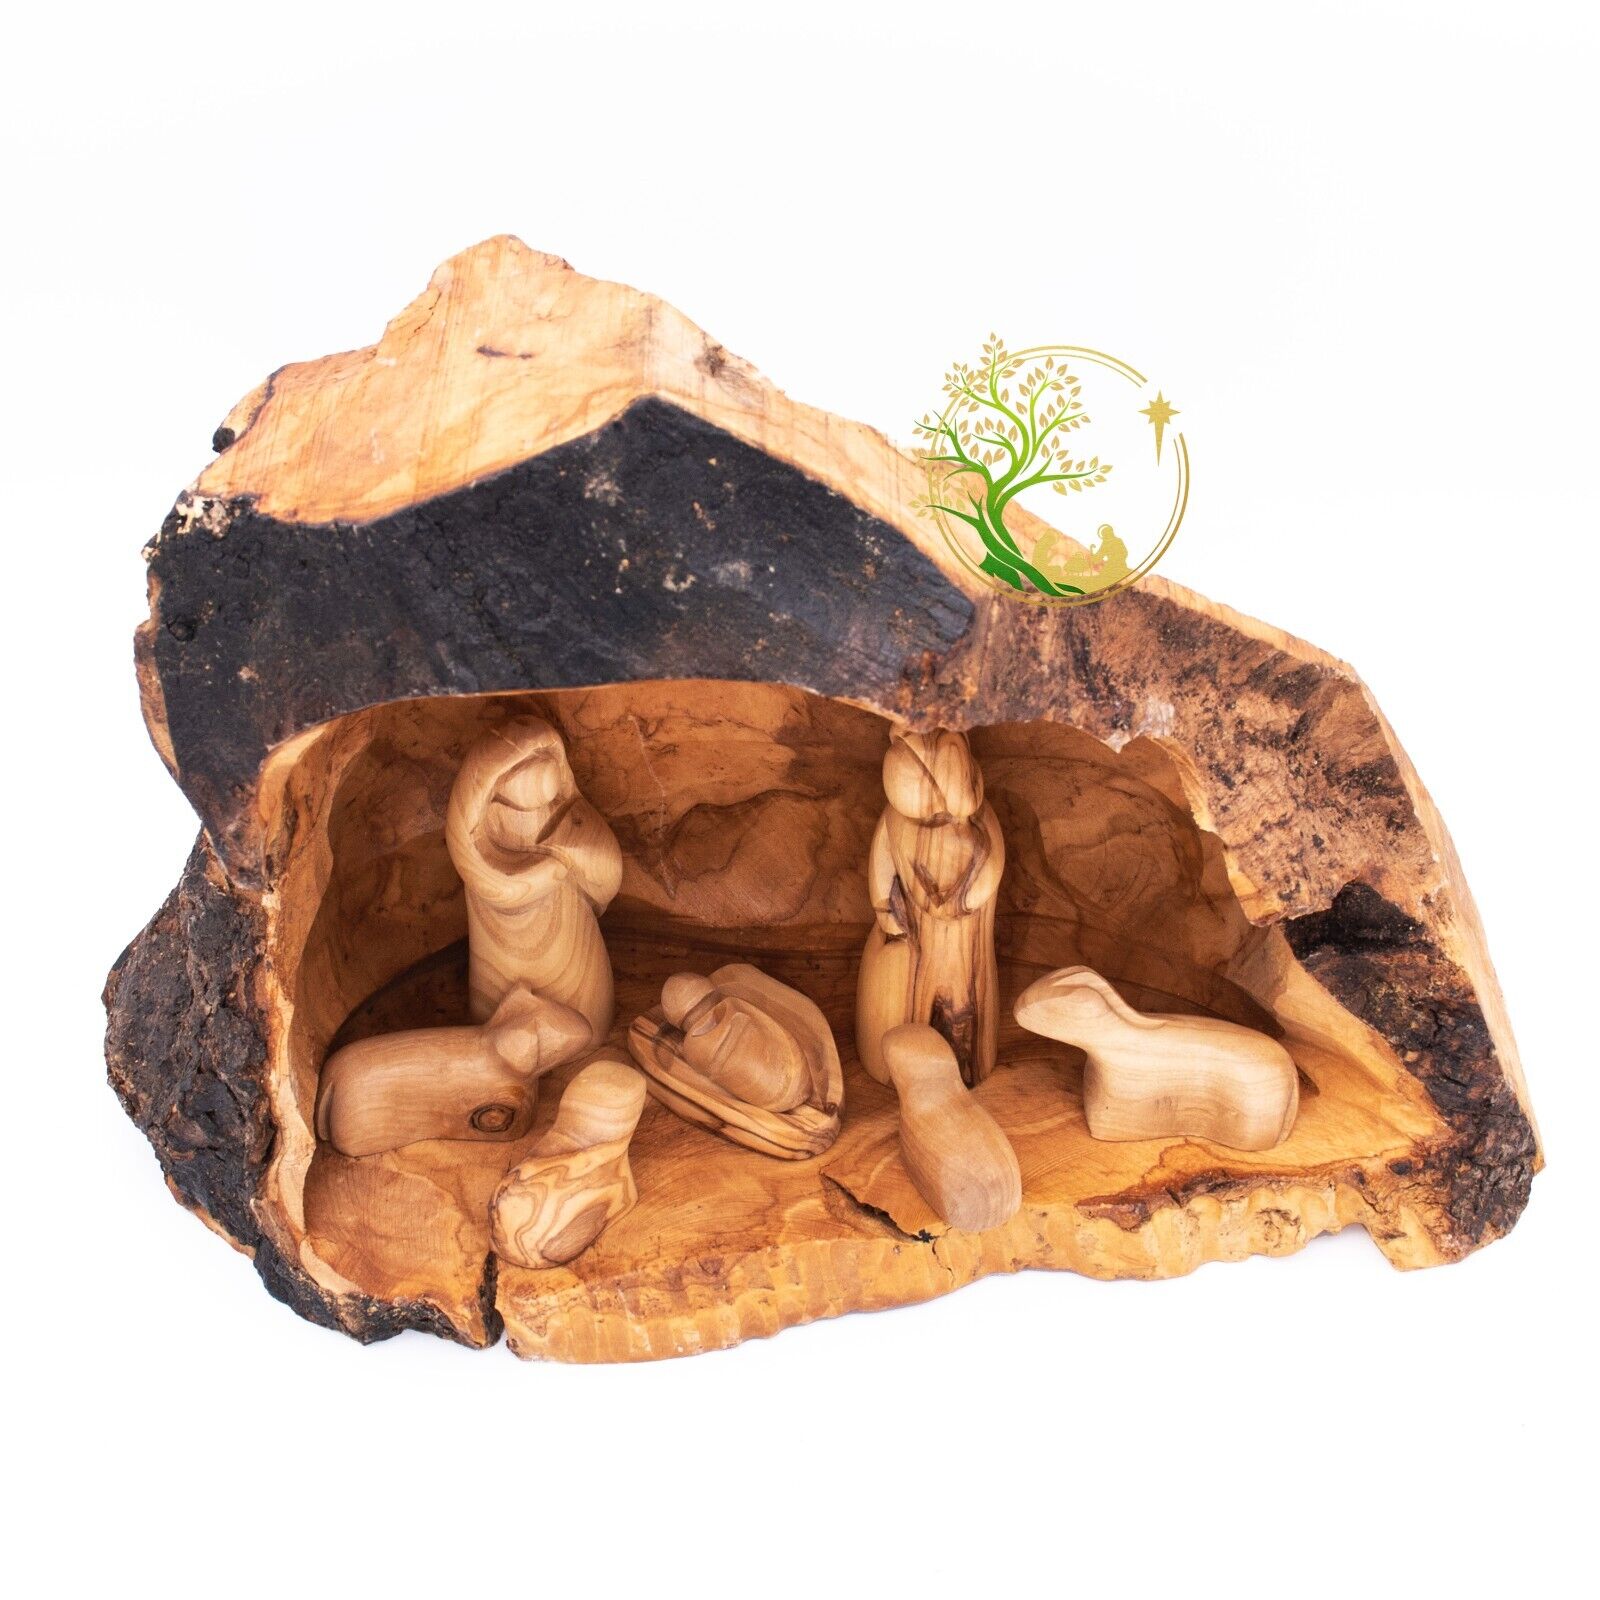 Nativity scene set carved inside an olive tree branch - Holy Land Nativity set -